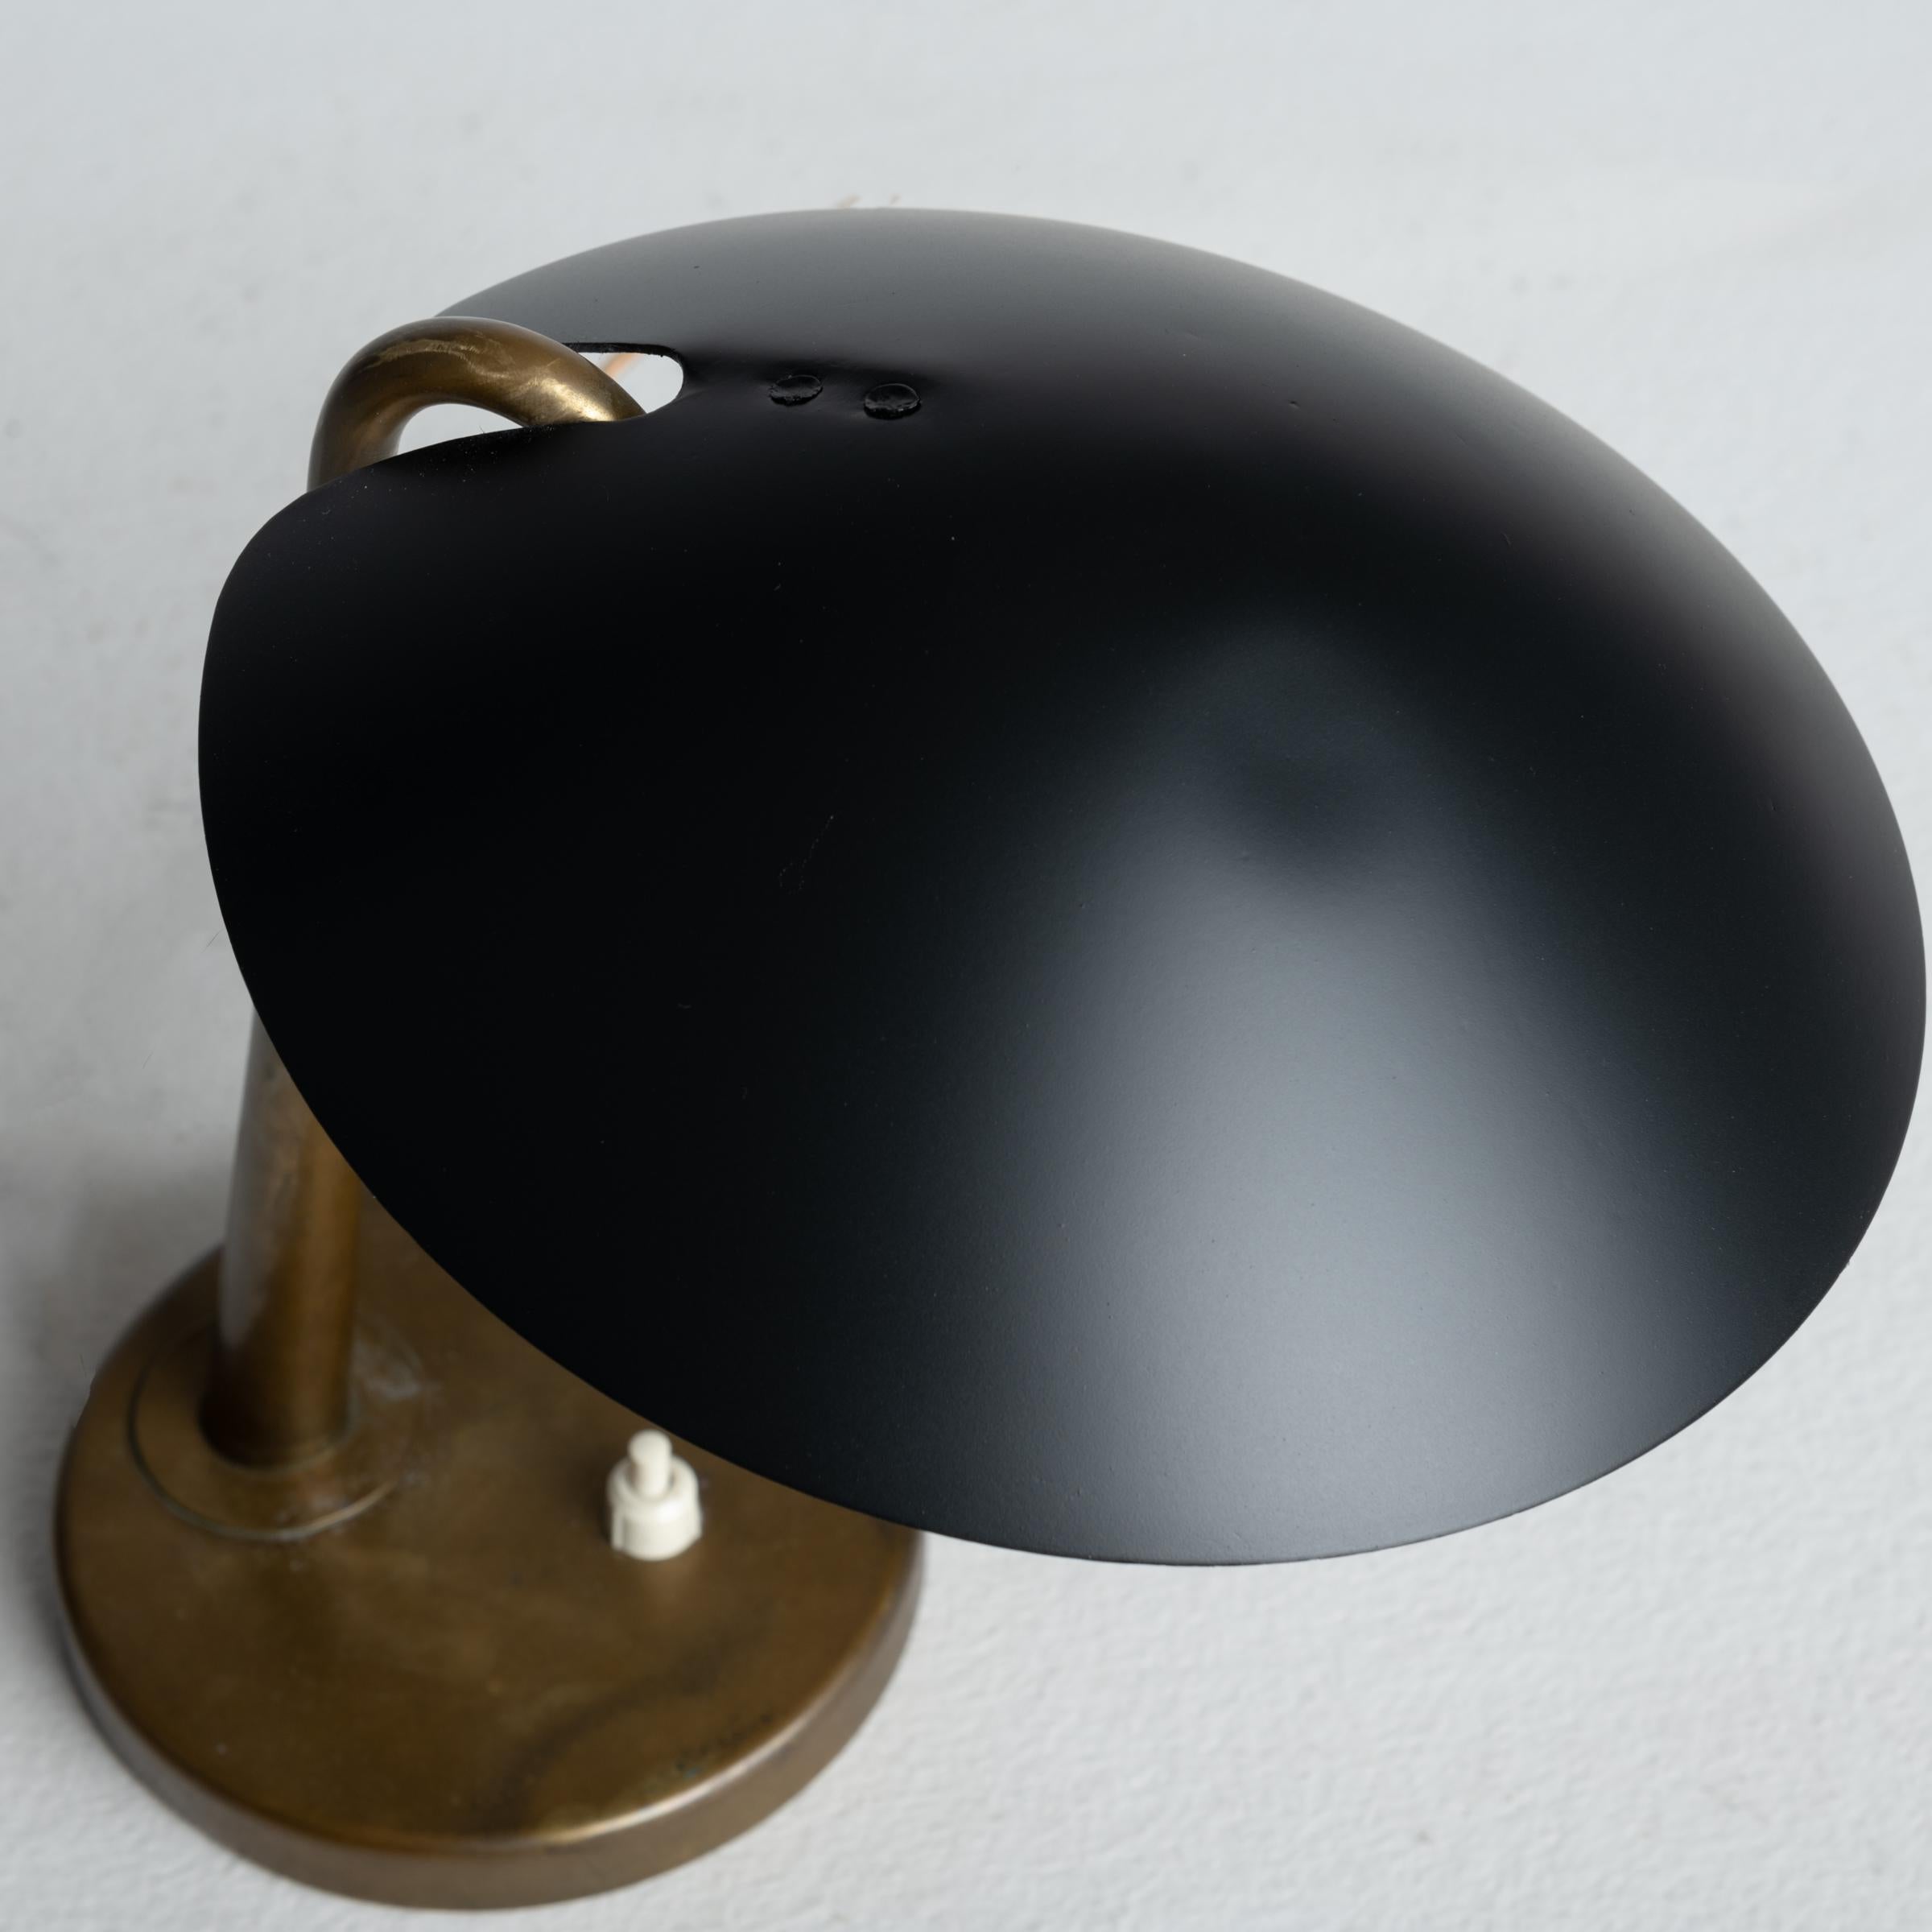 Tischlampe Modell 200 von Giuseppe Ostuni für Oluce (Messing)